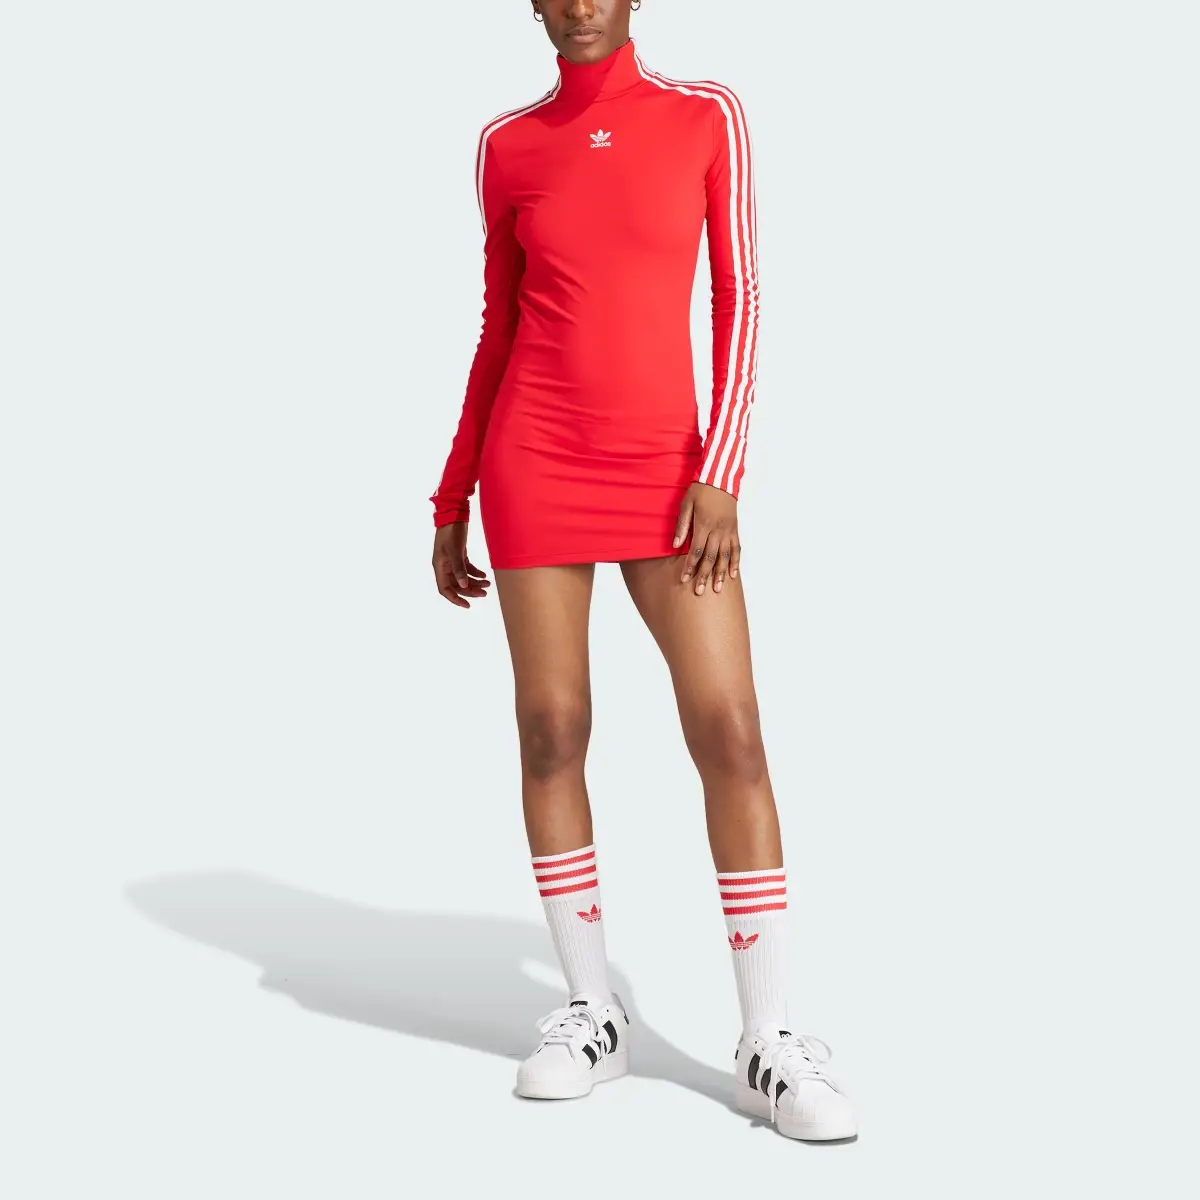 Adidas Adilenium Tight Cut Dress. 1